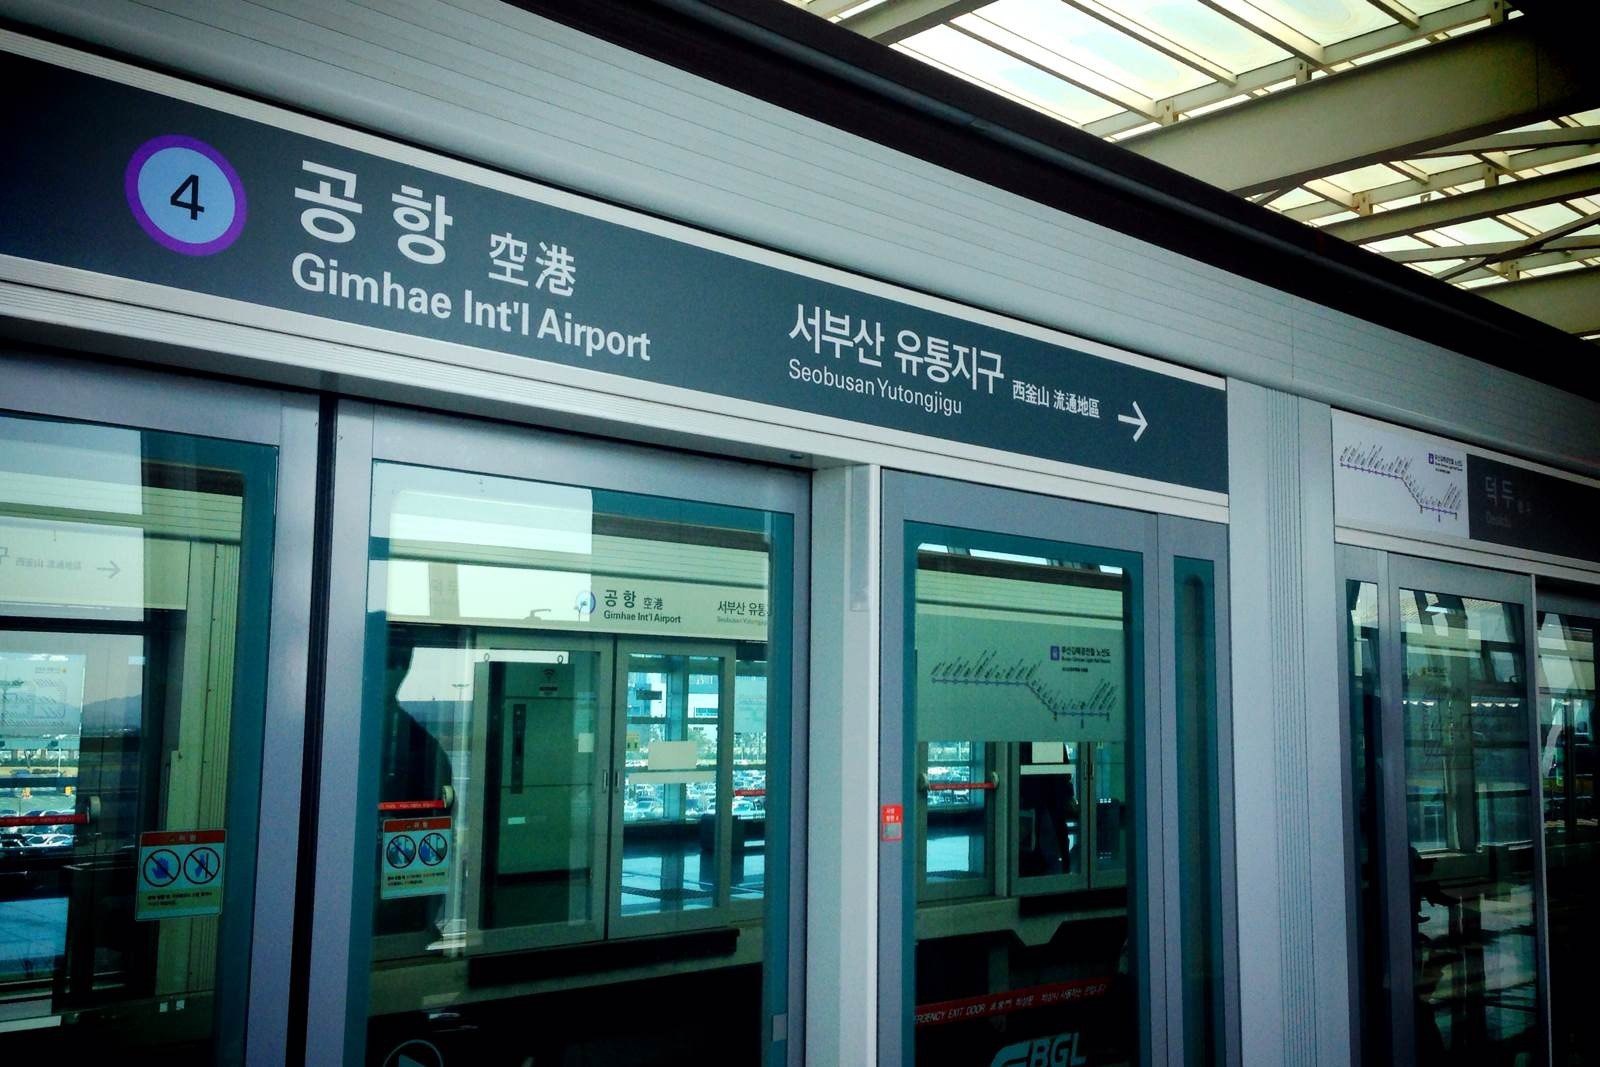 站台也有中文标示哦 釜山金海国际机场